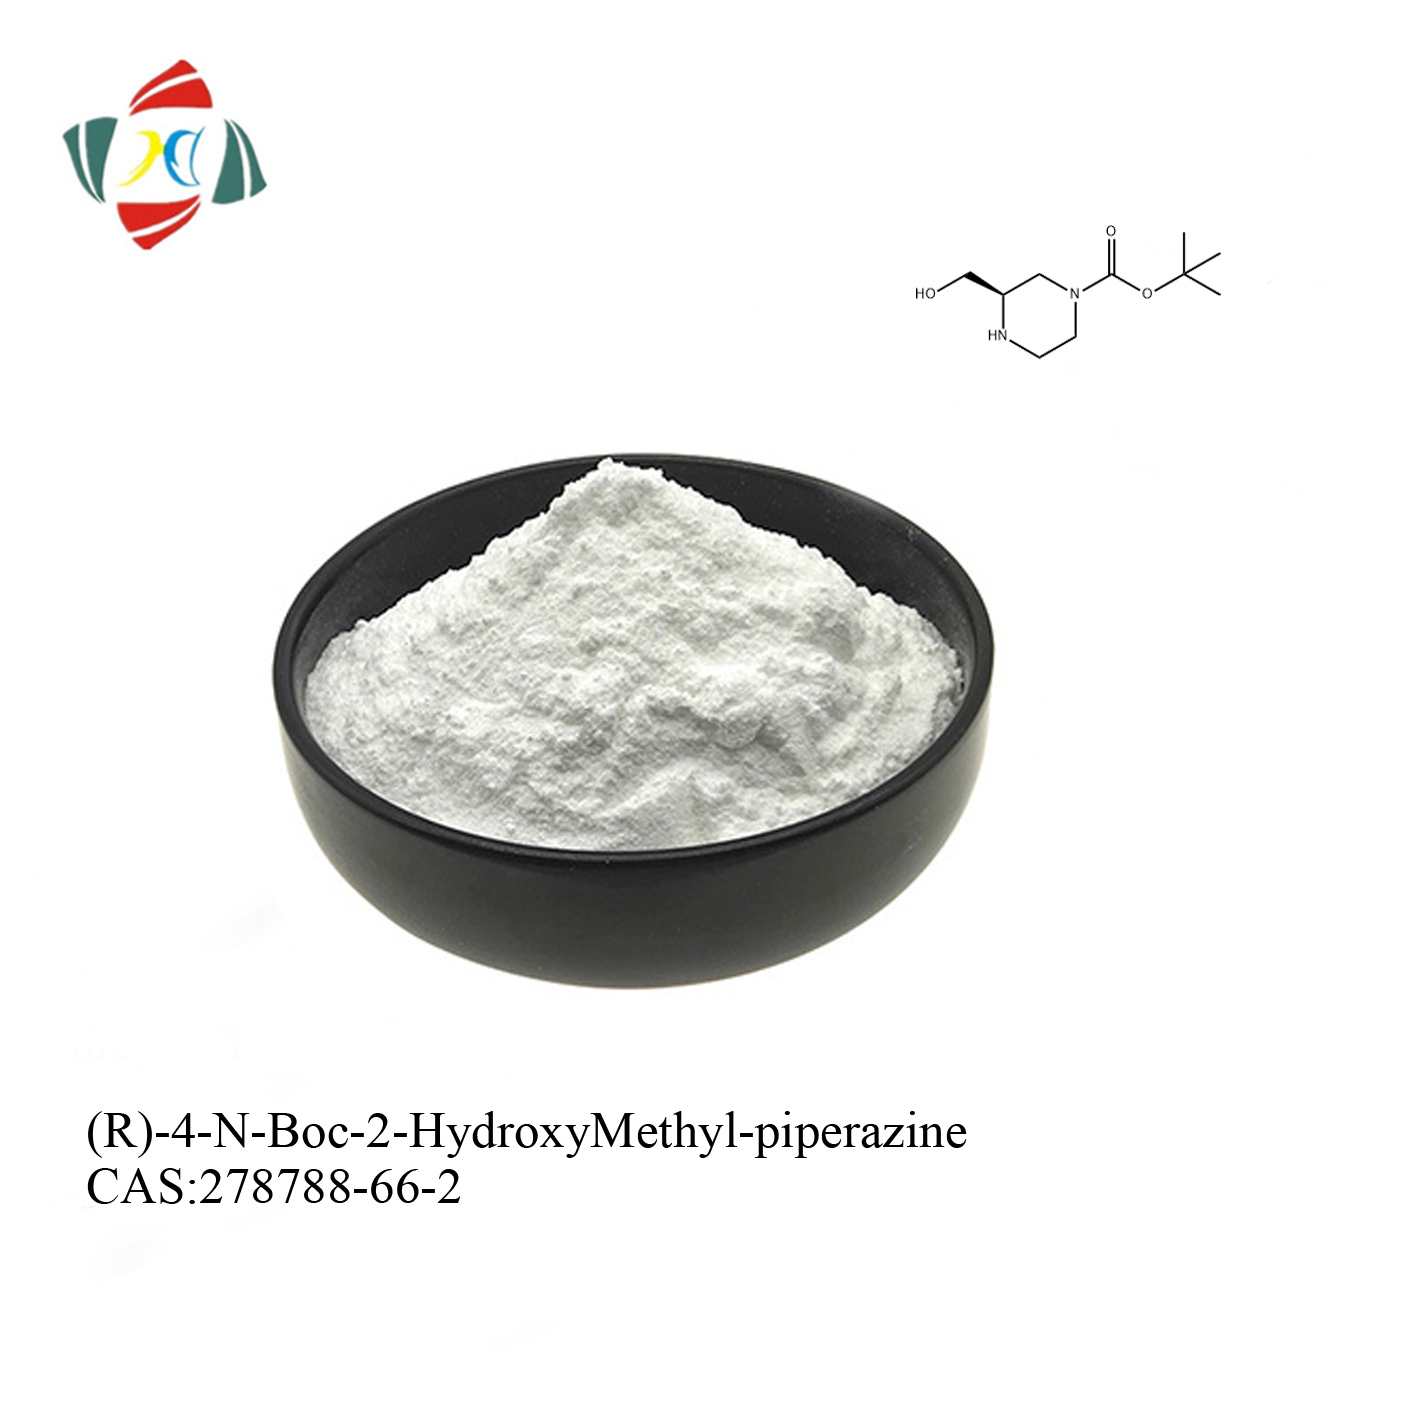 (R)-4-N-Boc-2-HydroxyMethyl-piperazin CAS 278788-66-2